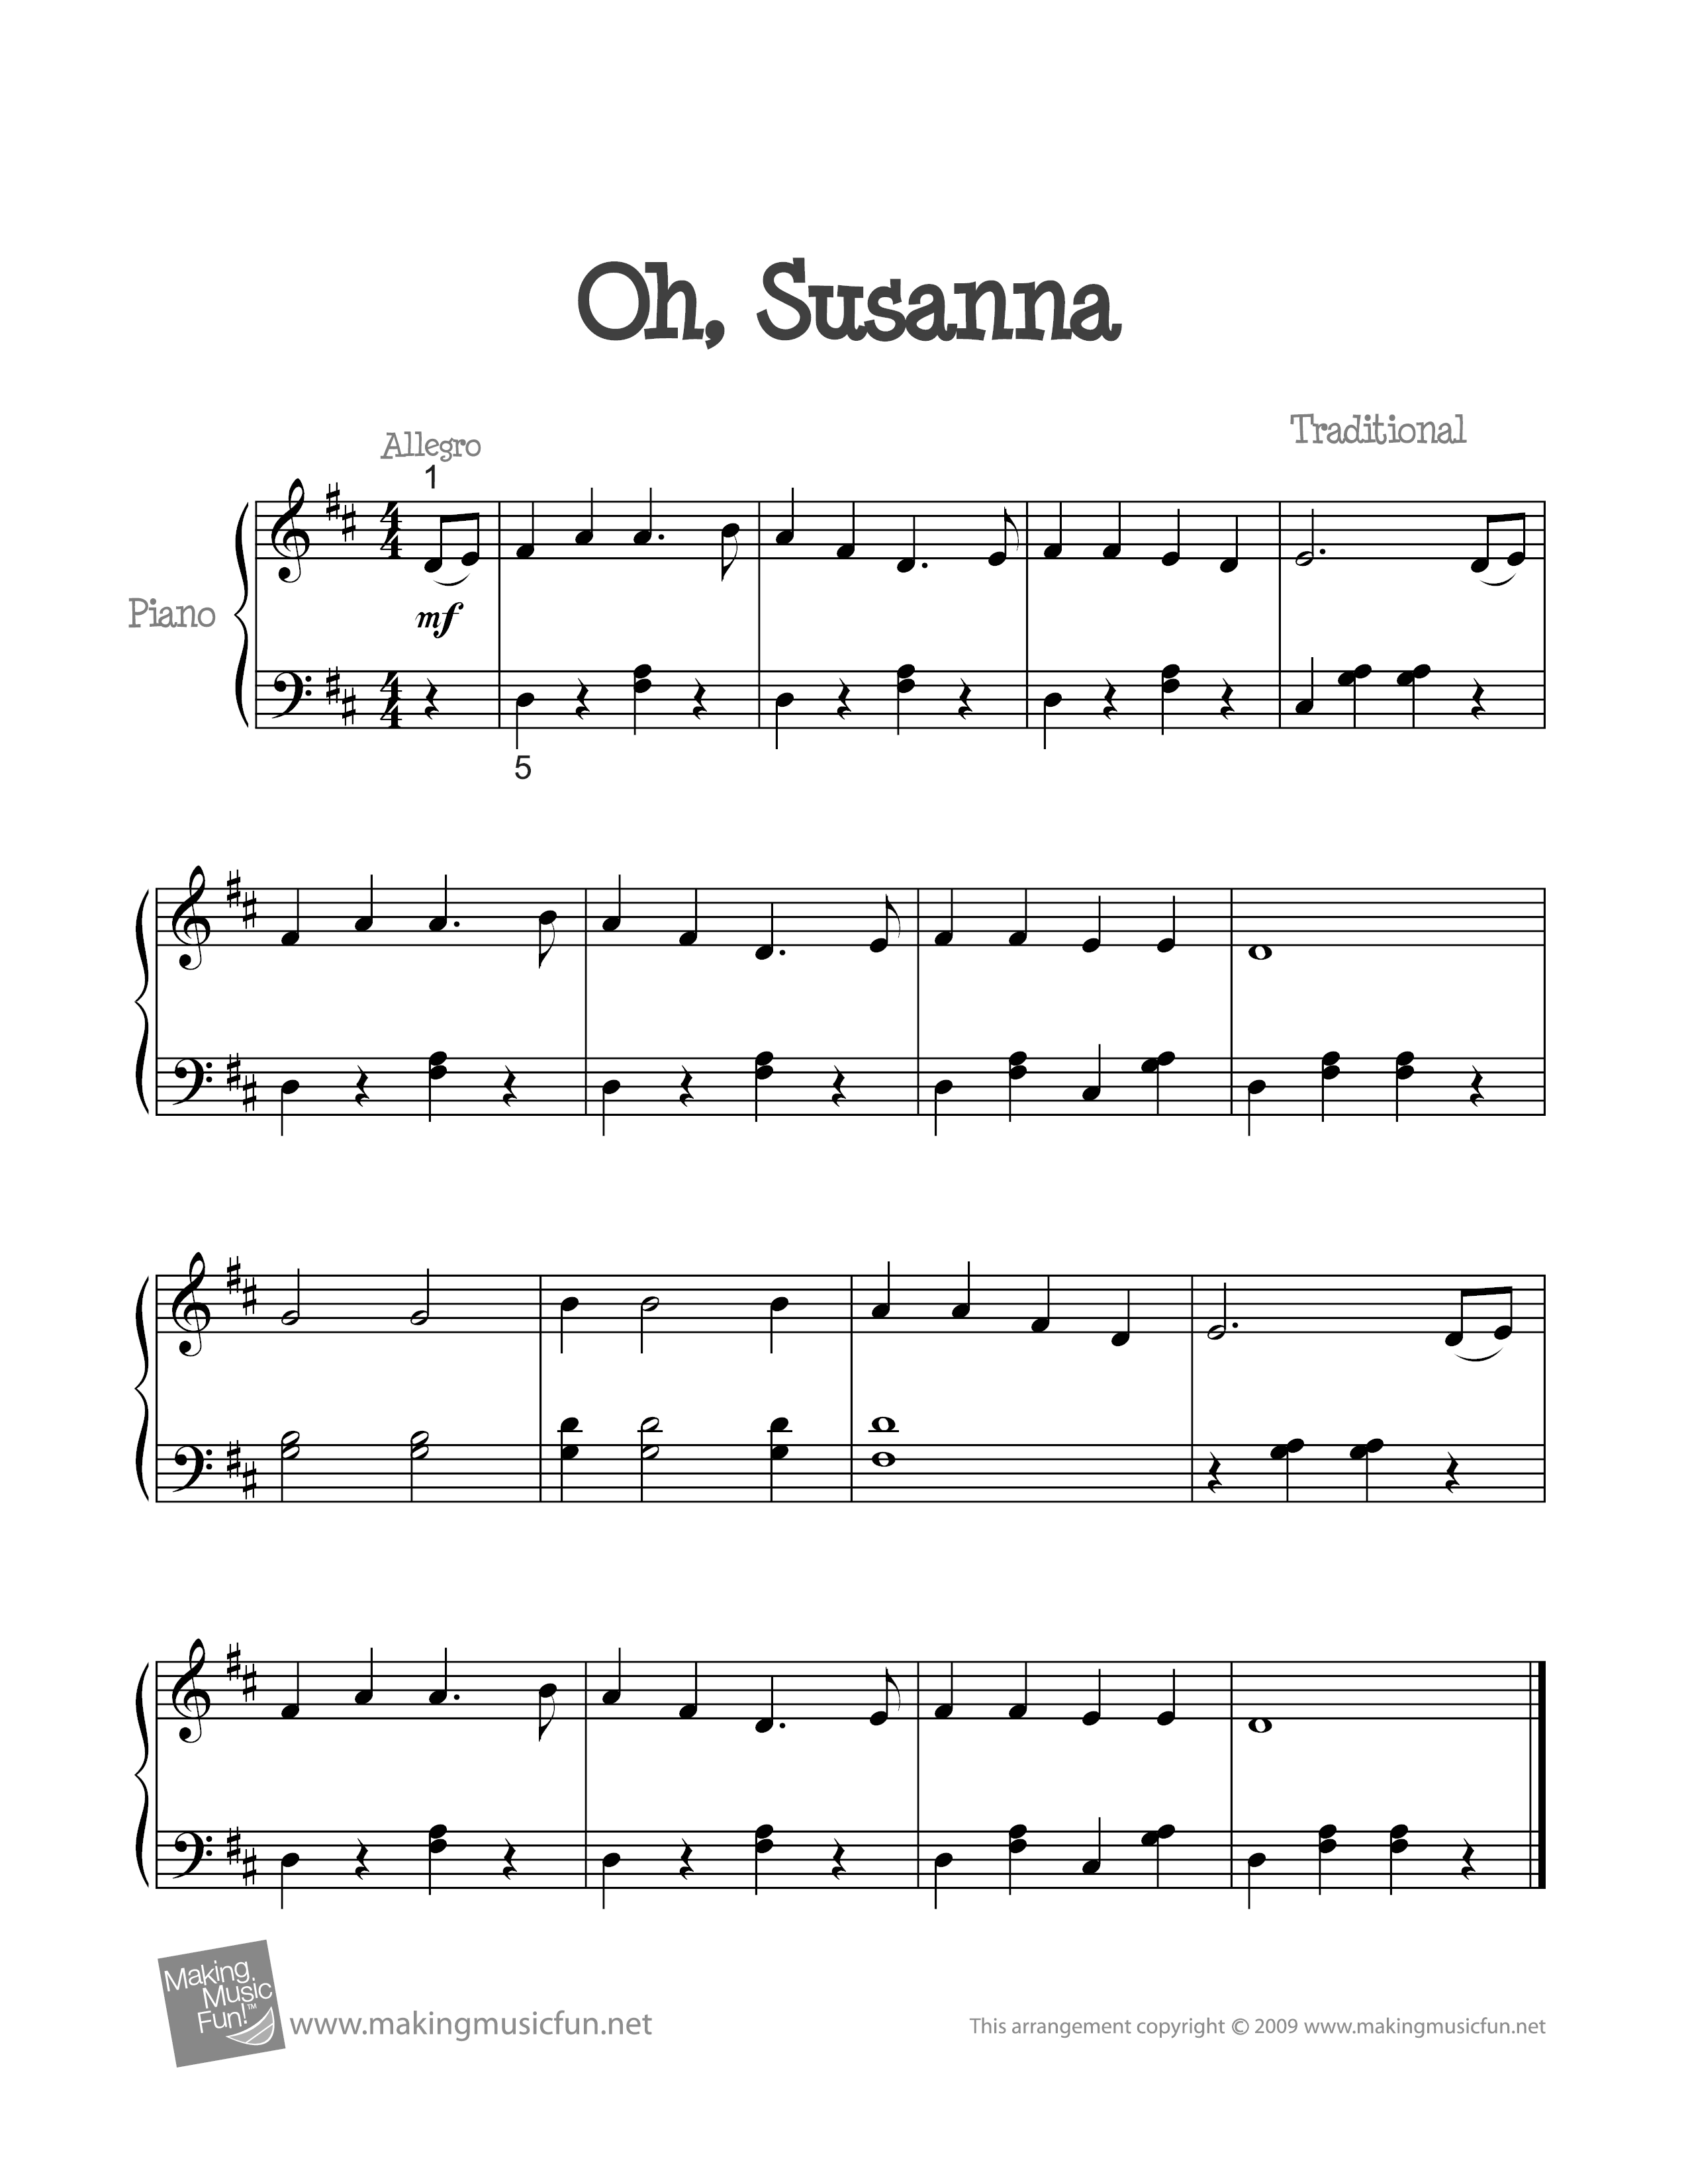 Oh! Susanna! Score